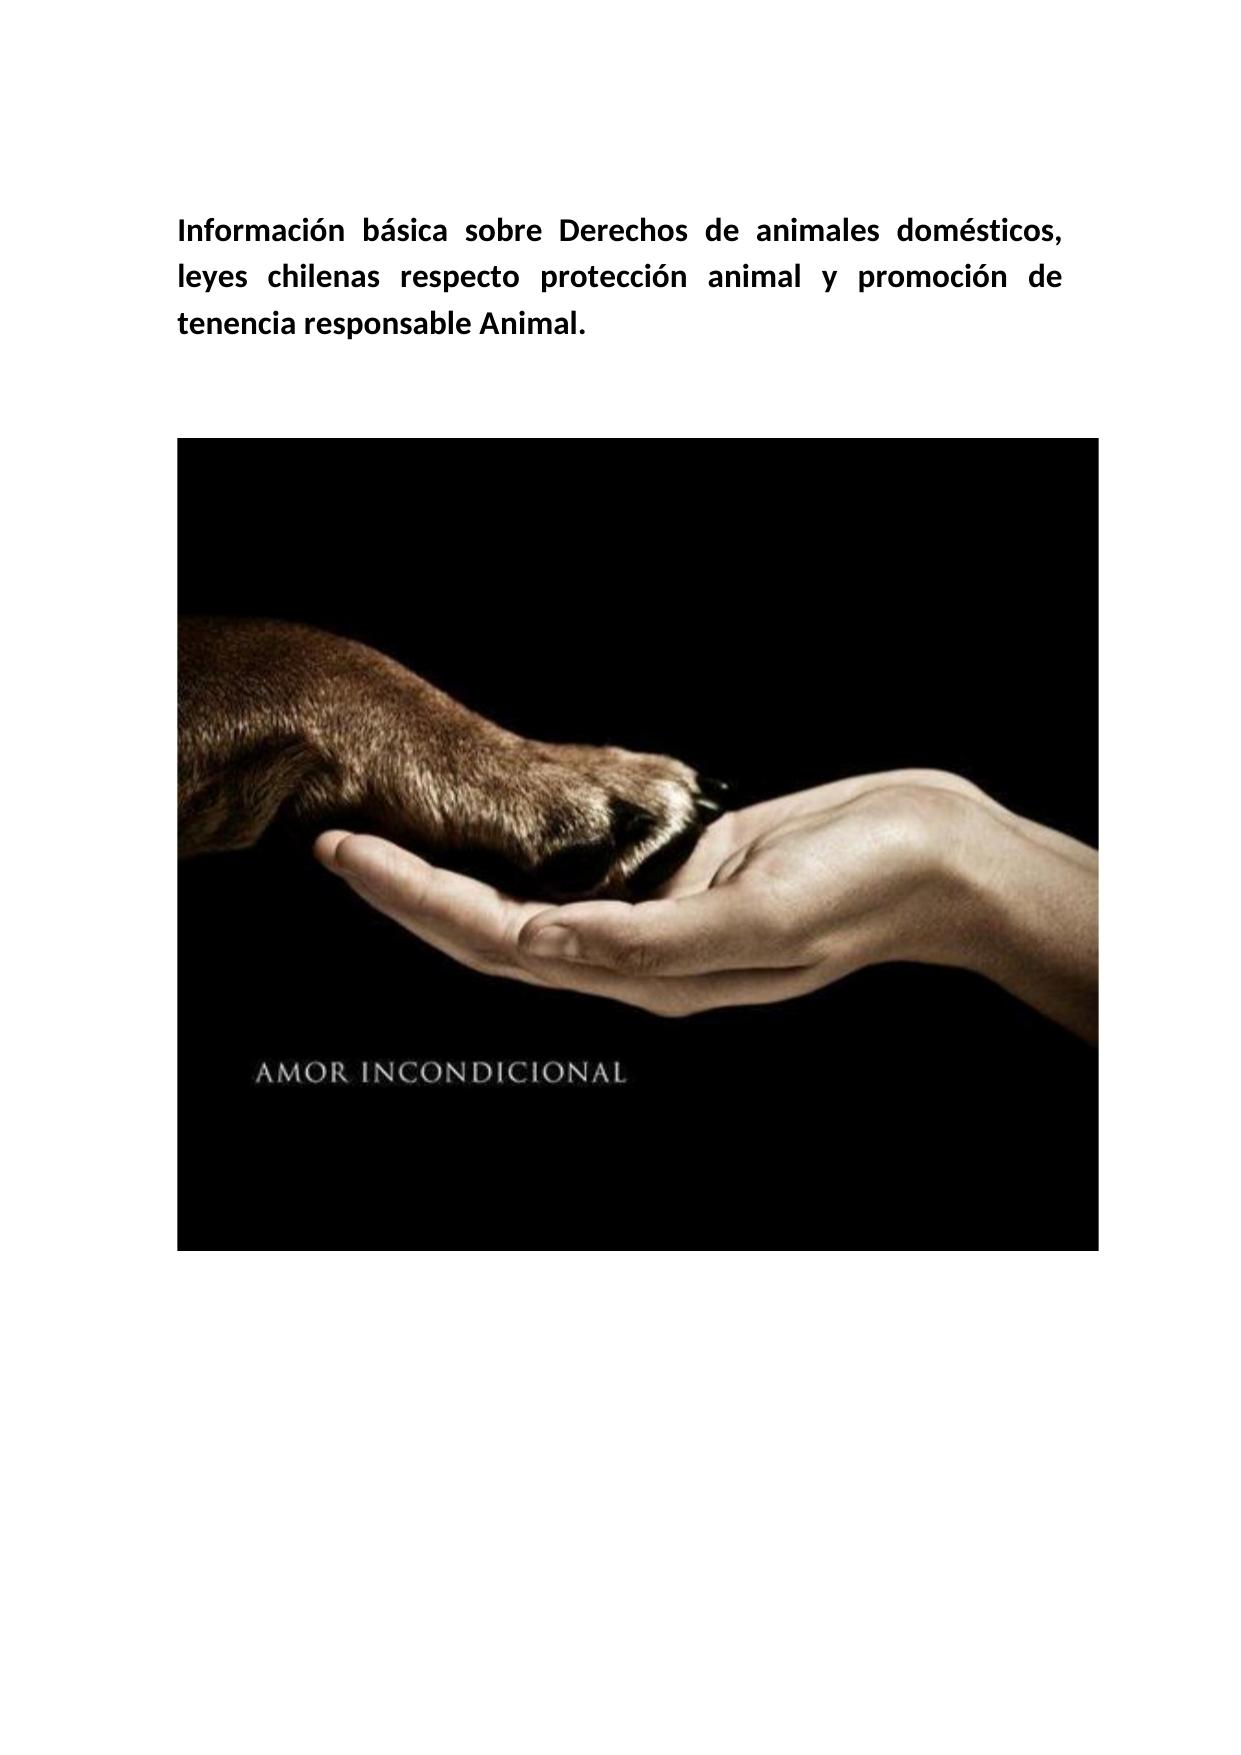 Información básica sobre Derechos de animales domésticos, leyes chilenas respecto protección animal y promoción de tenencia responsable Animal